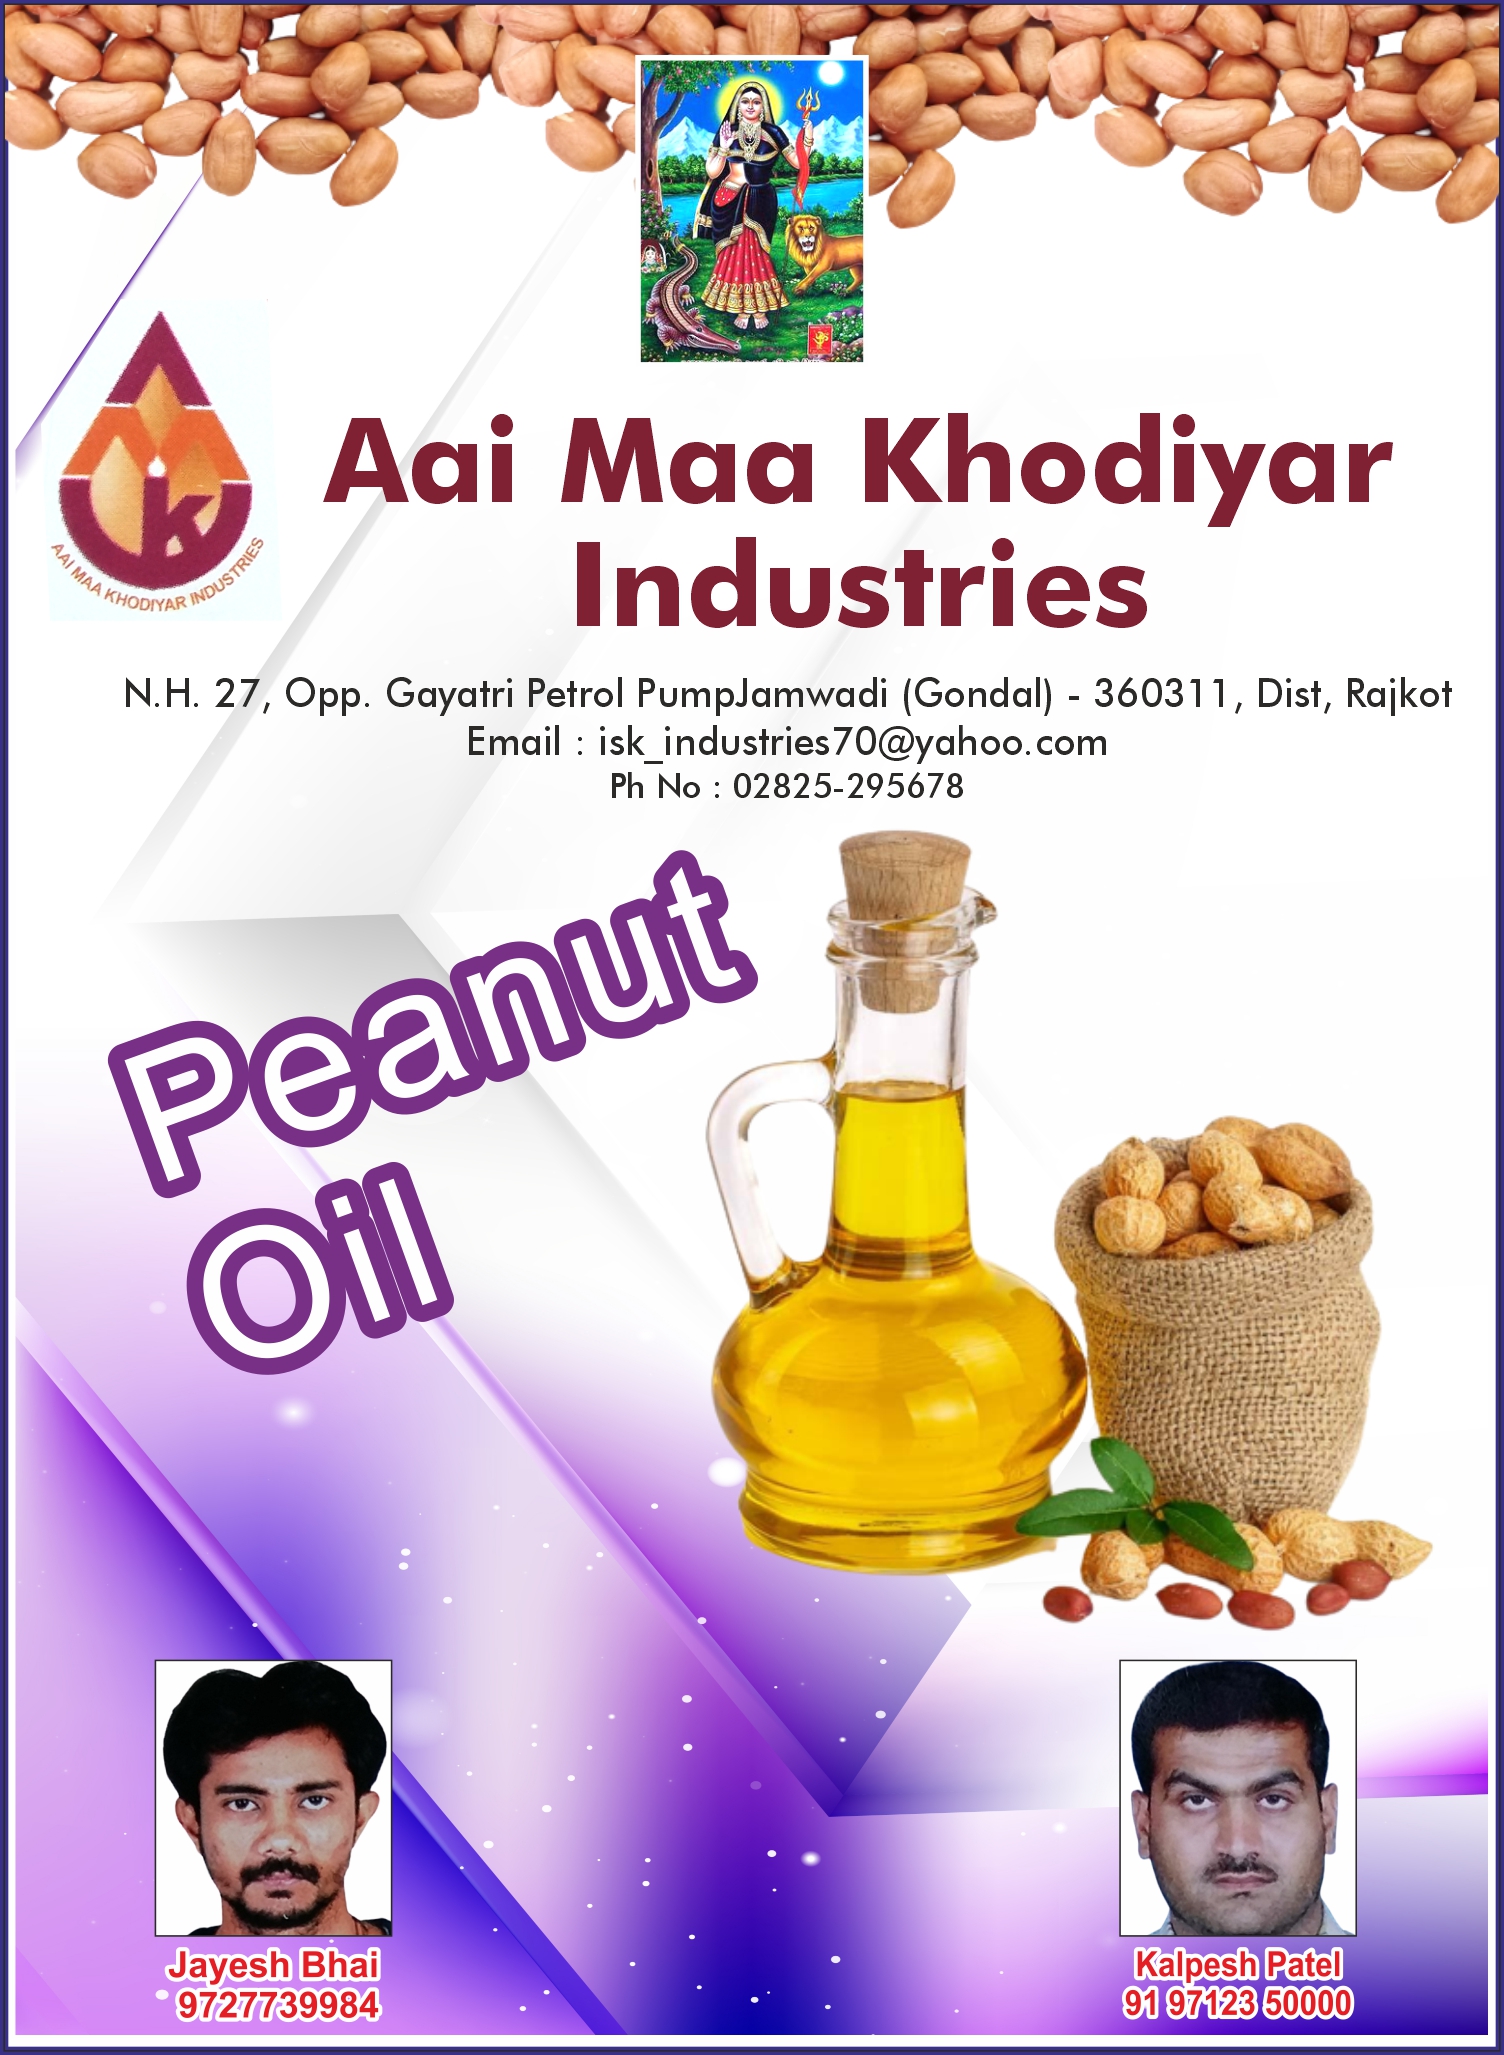 Aai Maa Khodiyar Industries